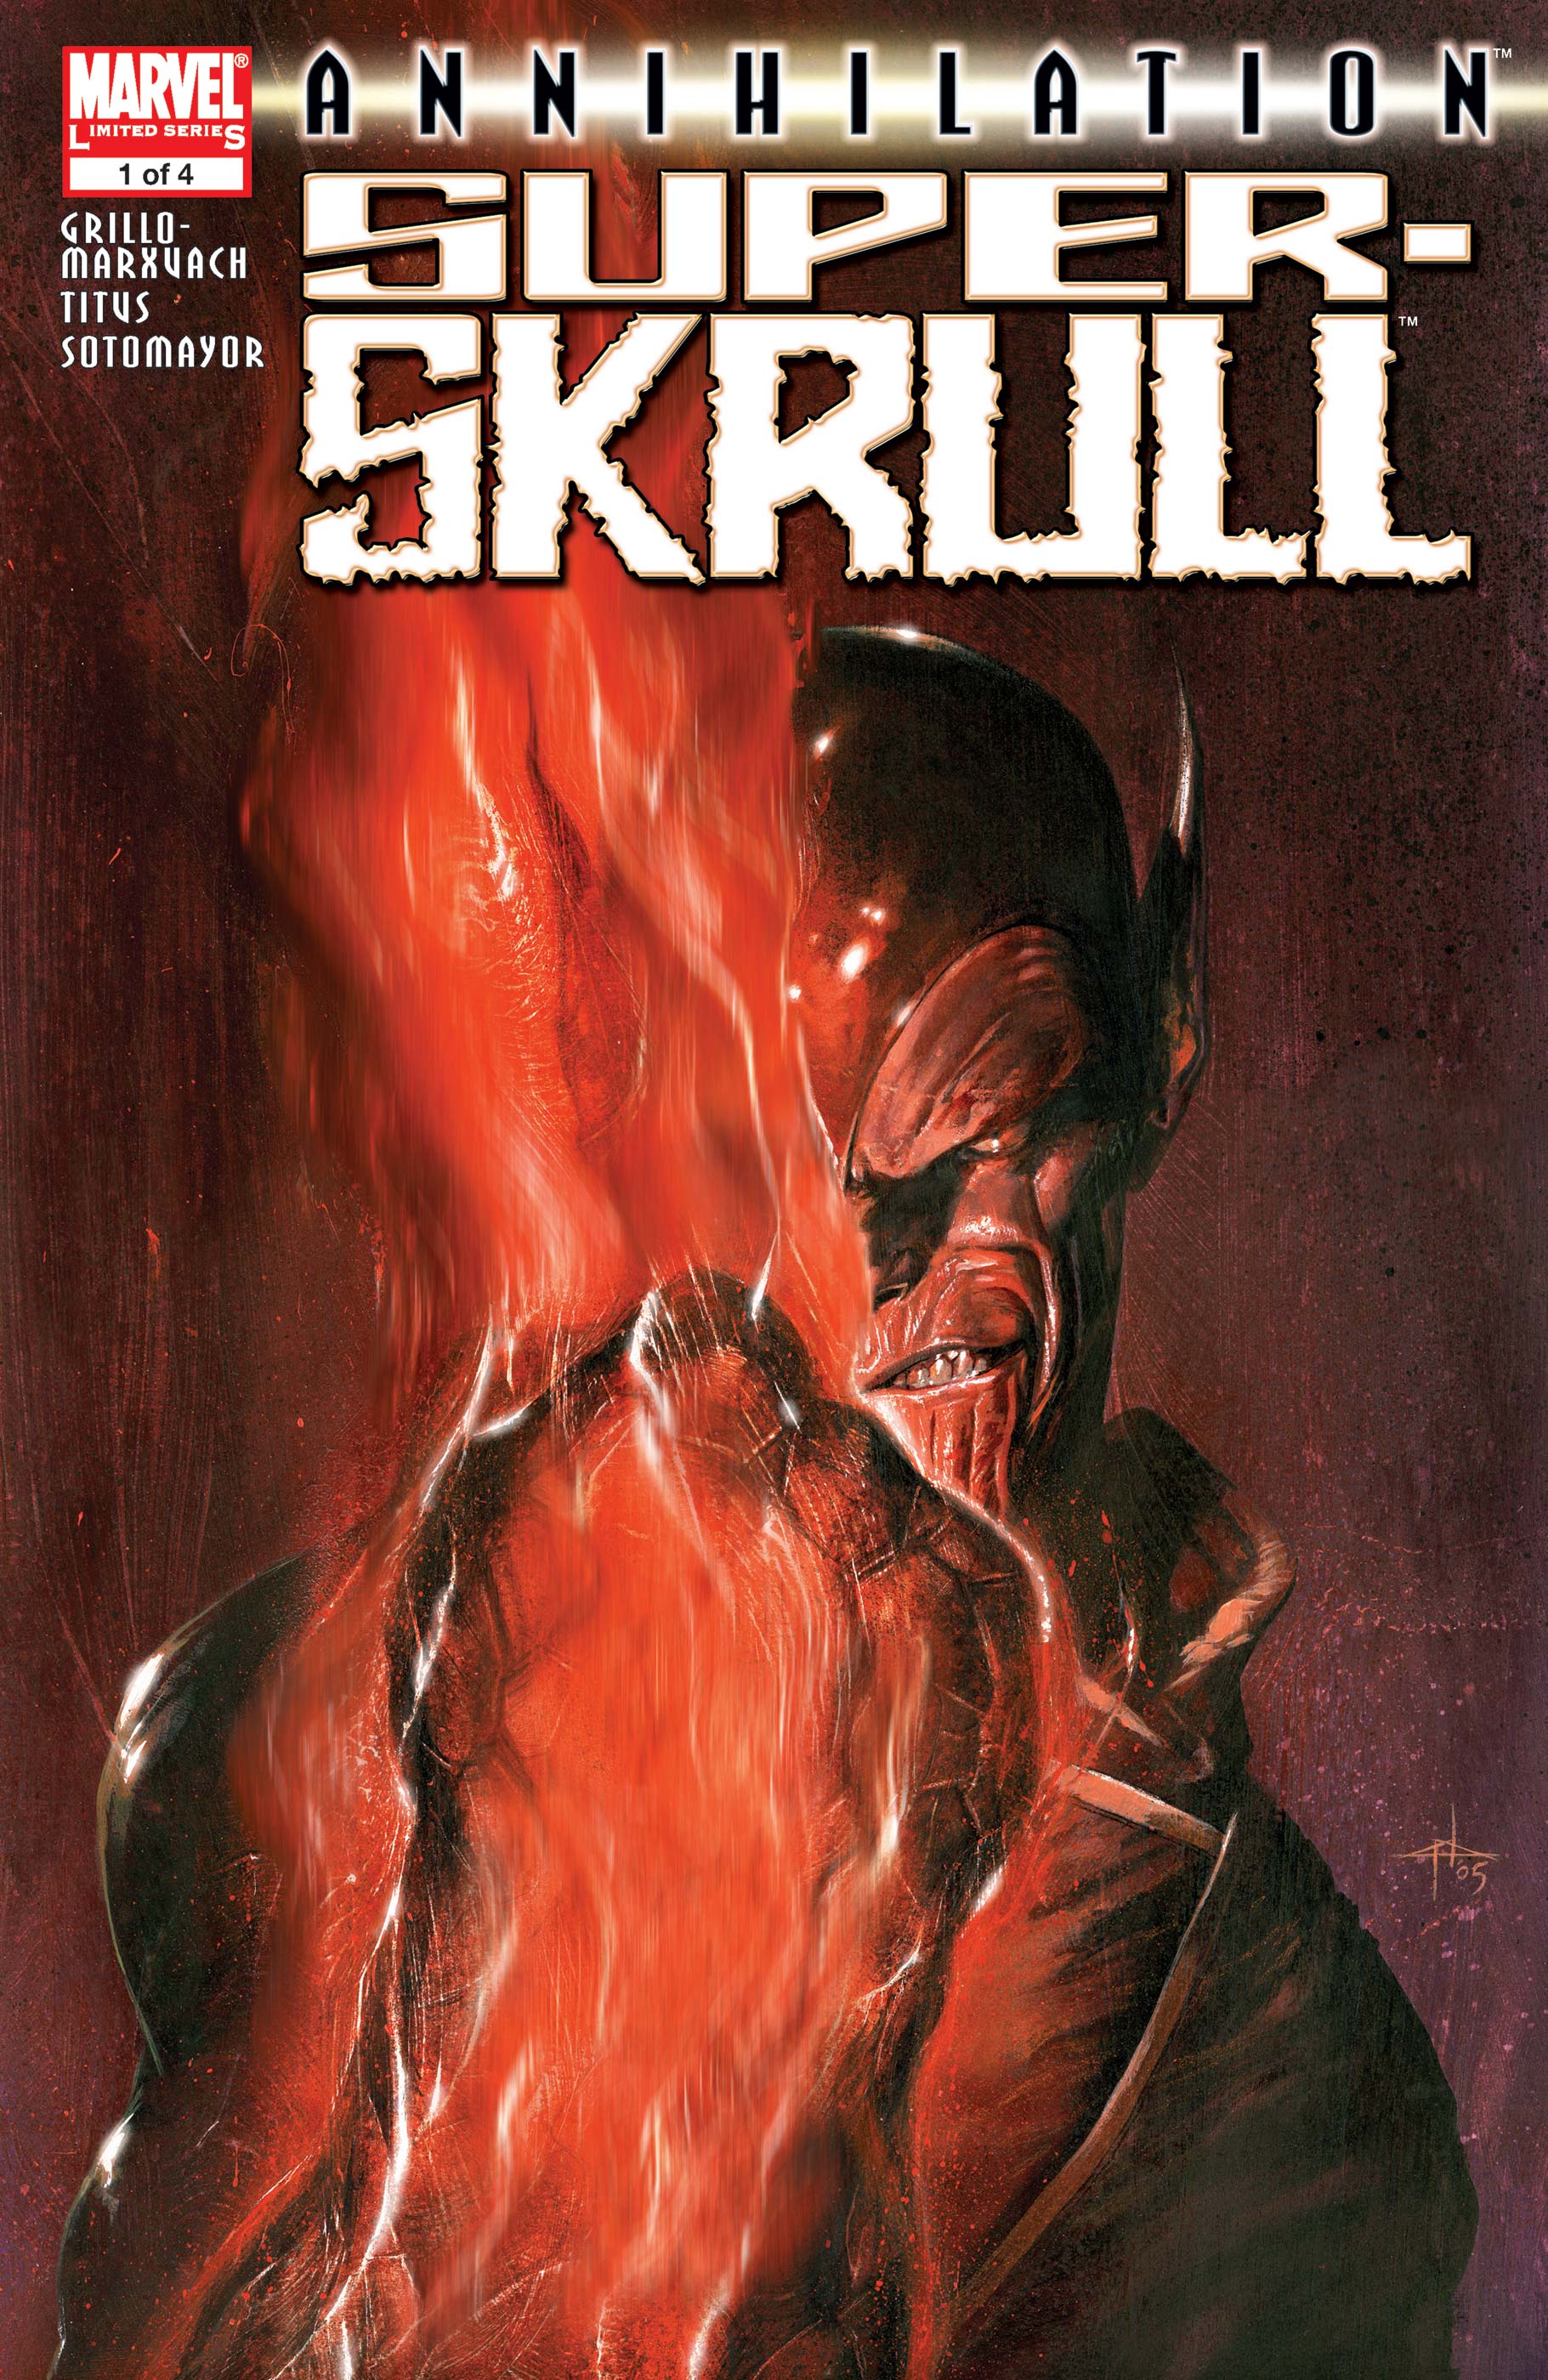 Annihilation: Super-Skrull (2006) #1